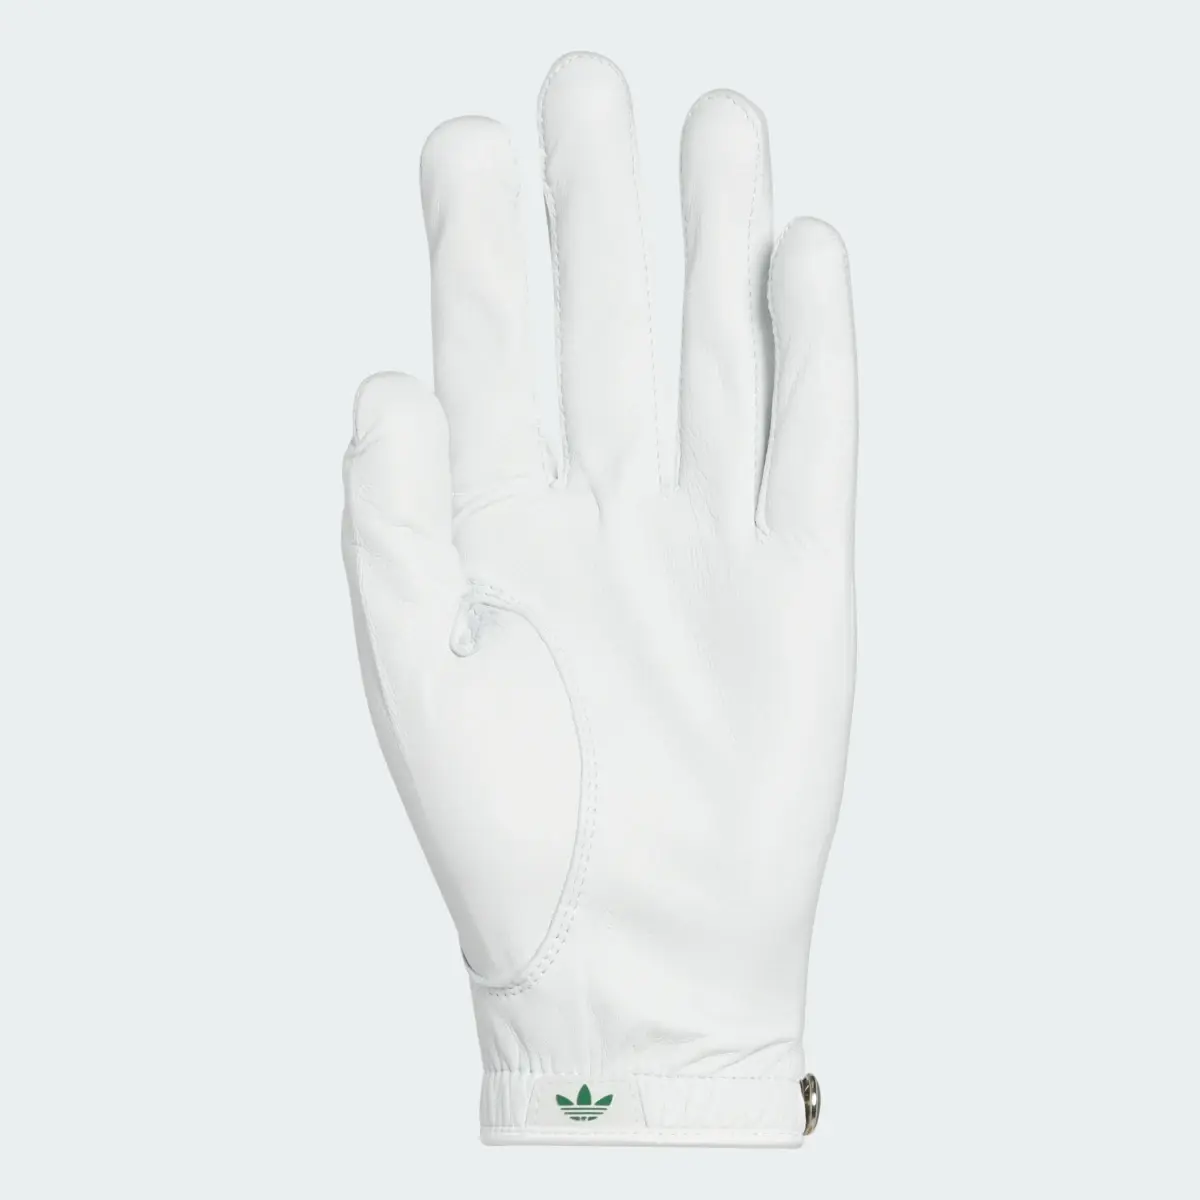 Adidas x Bogey Boys Glove. 2